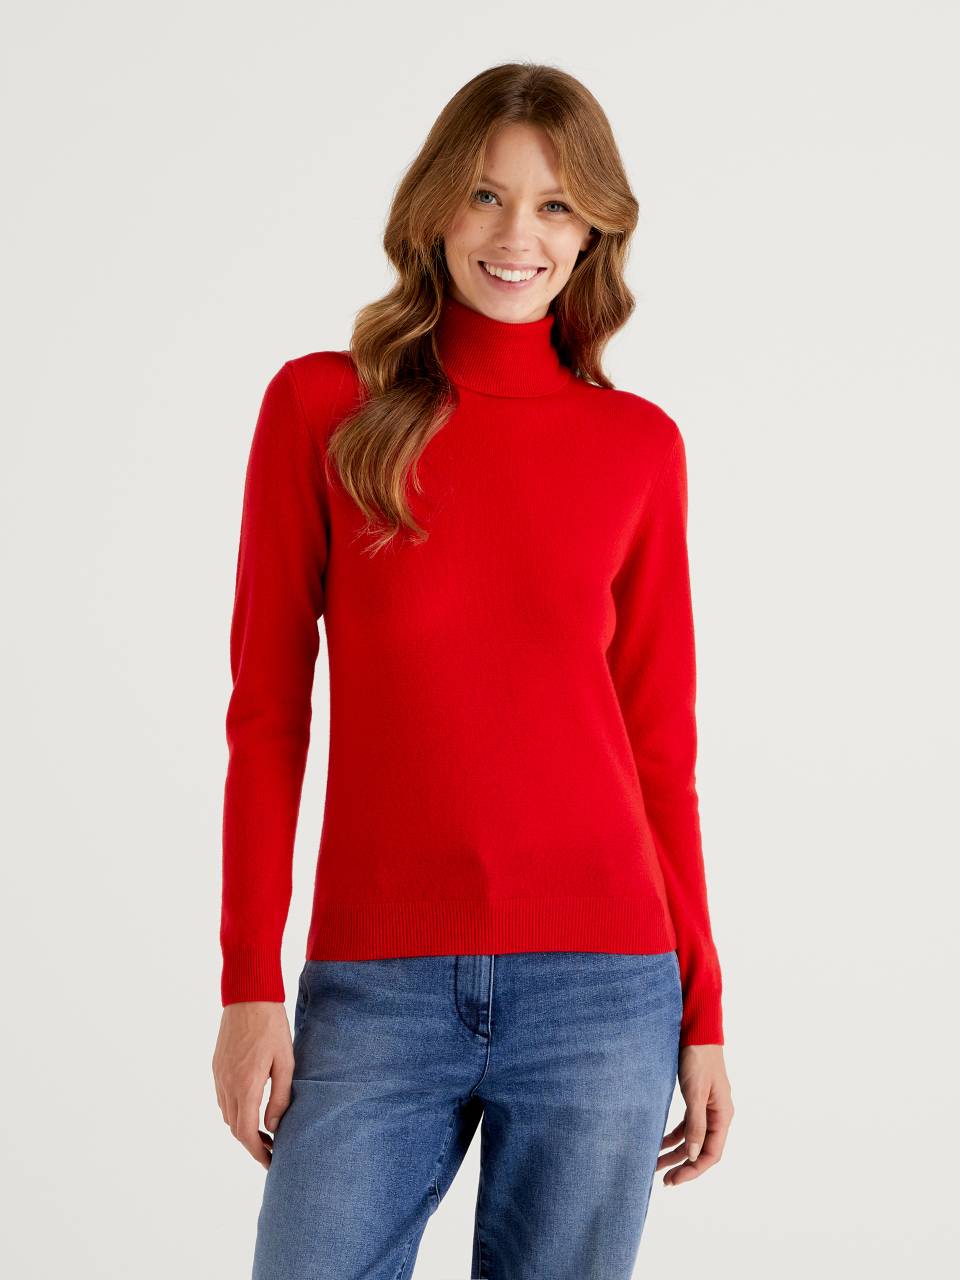 Jersey de cuello alto rojo de pura lana merina - Rojo